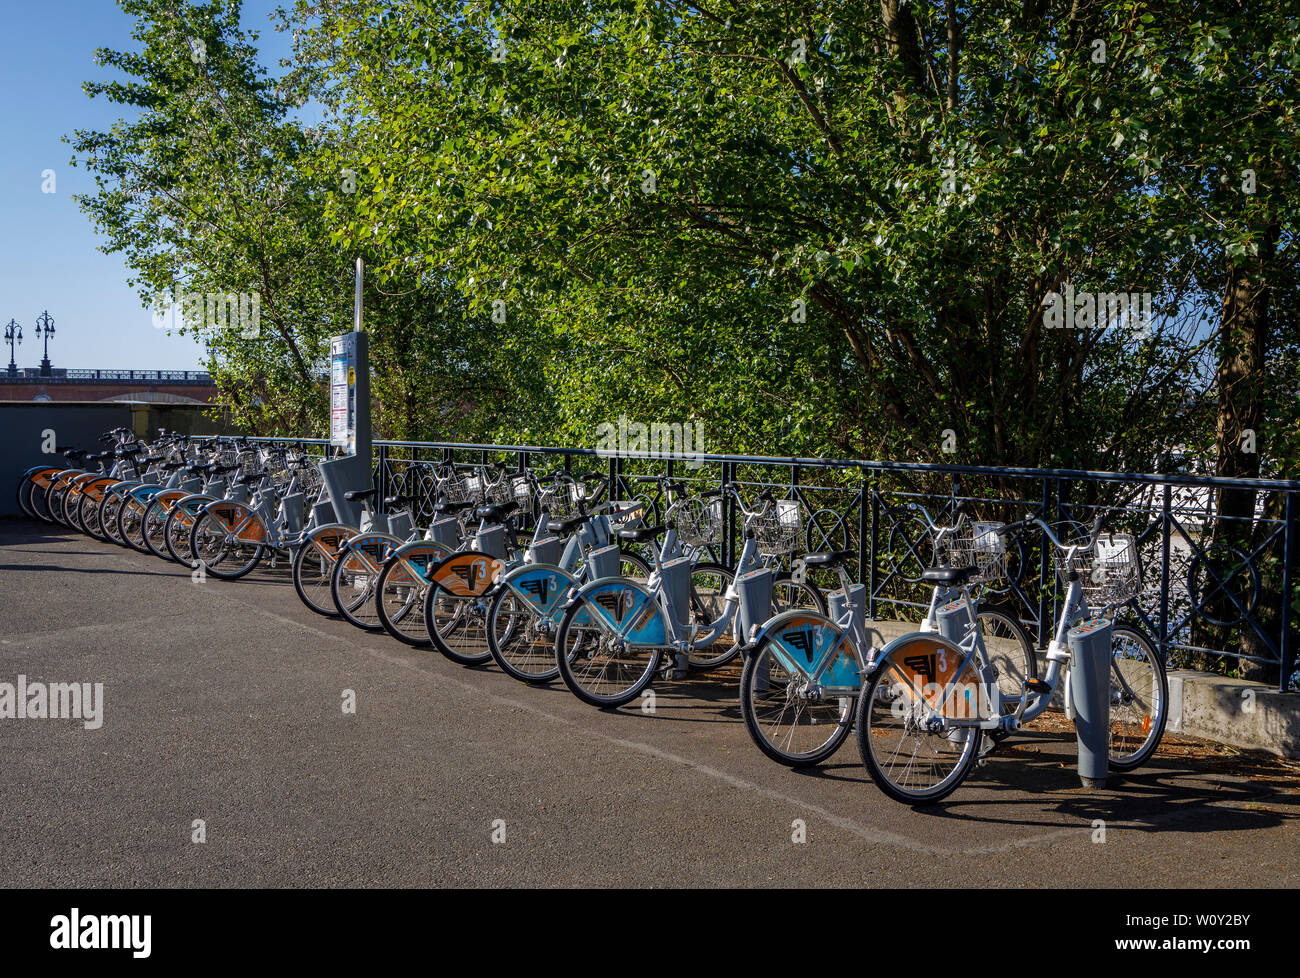 Le Velo de Bordeaux. Noleggio biciclette parco per centro città trasporti pubblici. Popularsite accanto al fiume Garonne a Bordeaux, Gironde, Francia. Foto Stock